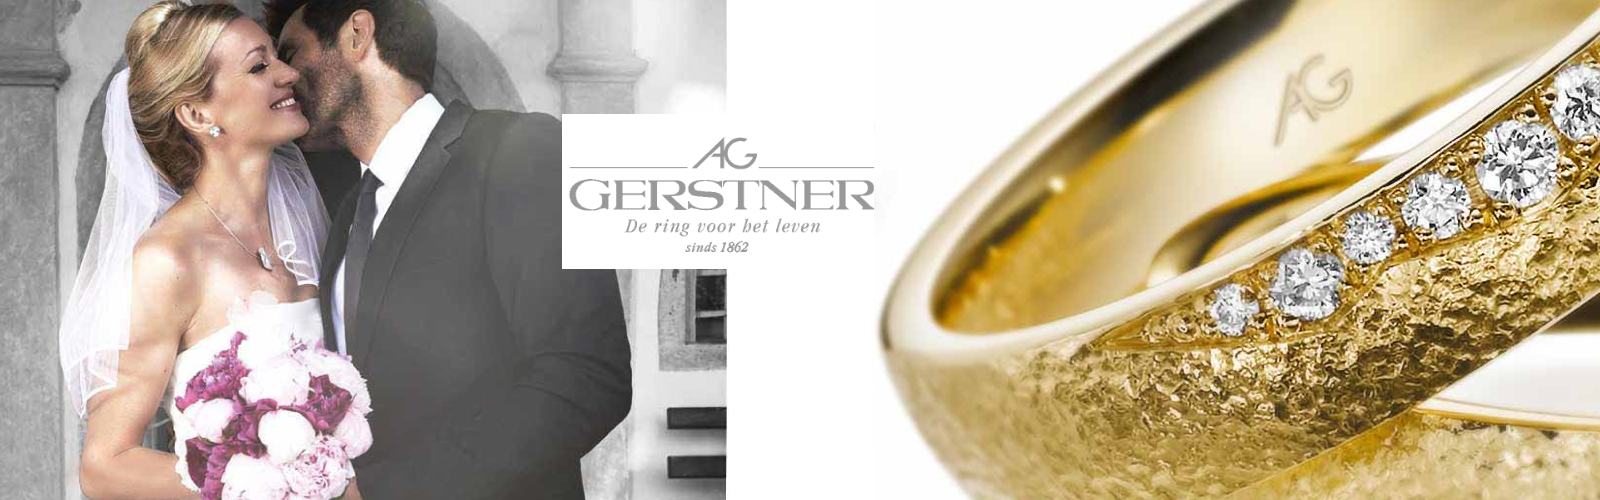 Gerstner-trouwringen-topkwaliteit-ringen-bij-Wolters-Juweliers-Coevorden-Emmen